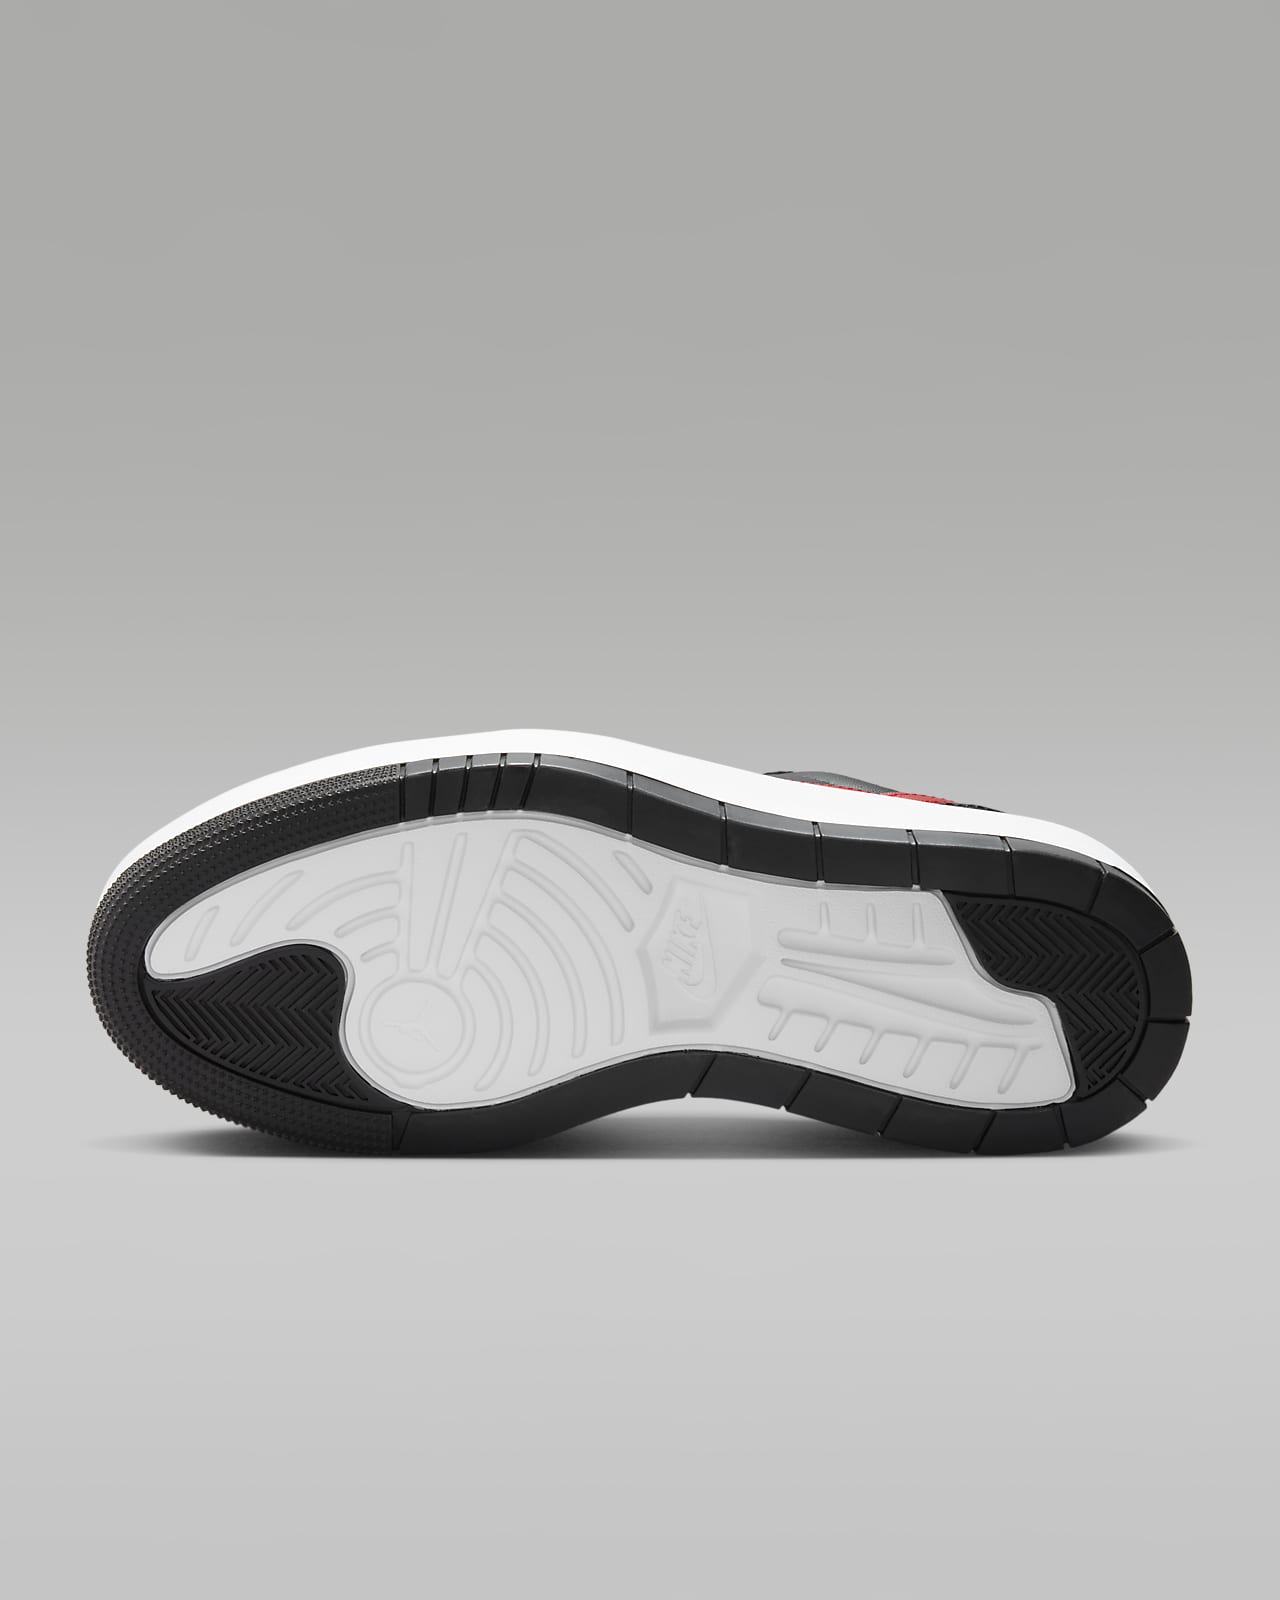 NIKE Air Jordan 1 Elevate Low leather sneakers